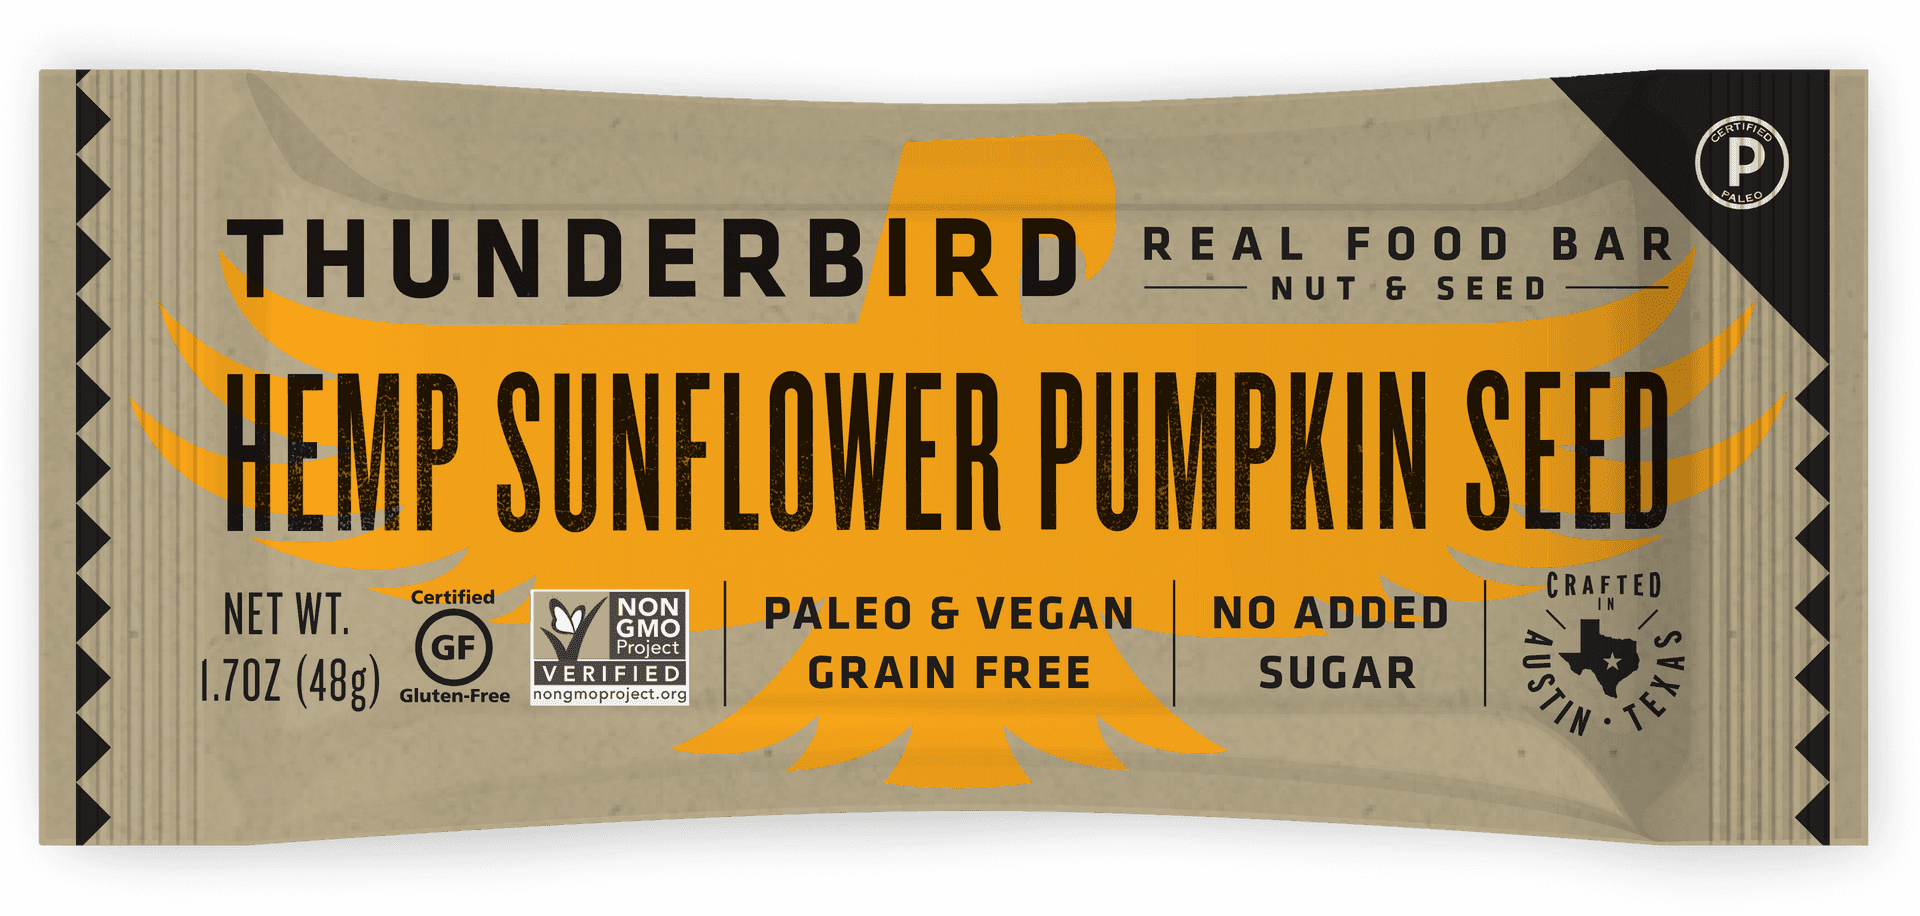 Thunderbird Hemp Sunflower Pumpkin Seed Bar PNG